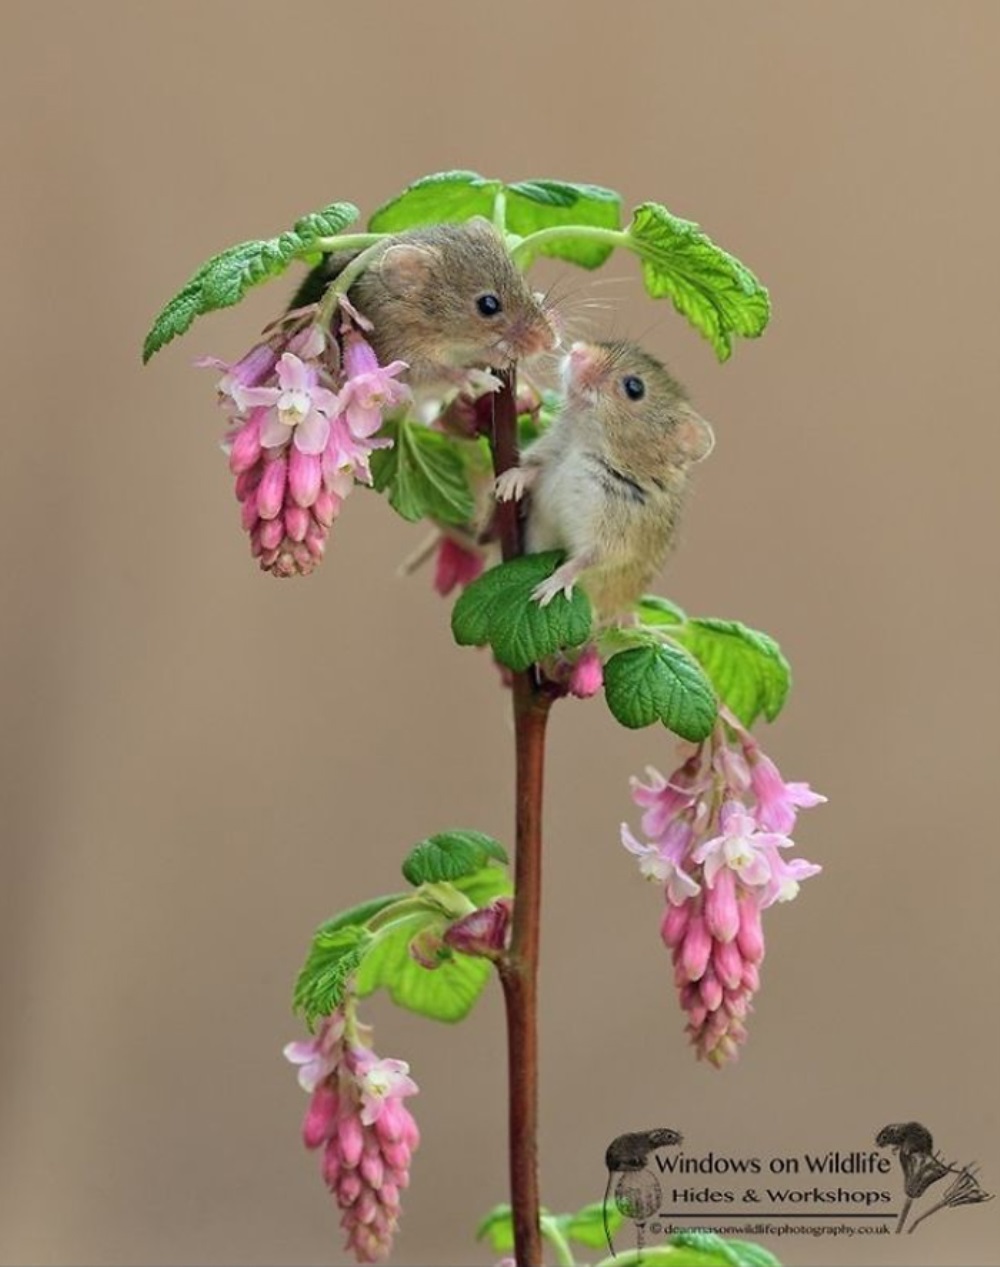 Ratón se sienta en una flor